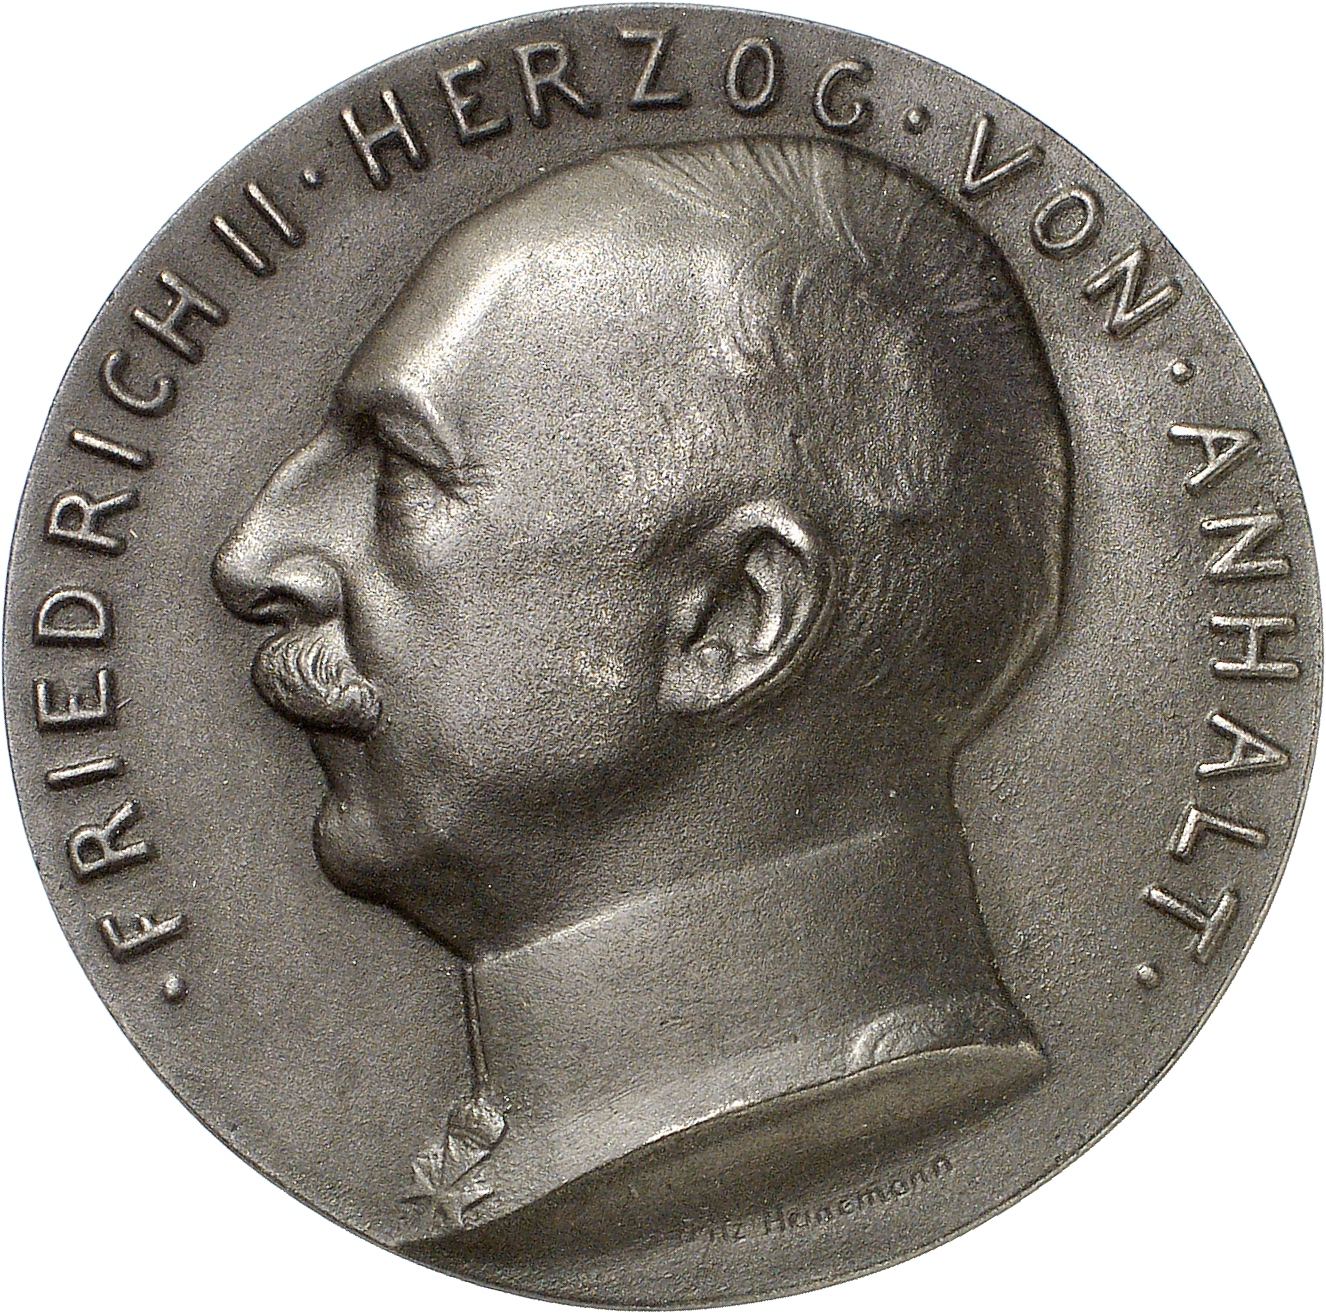 Heinemann, Fritz: Friedrich II. Herzog von Anhalt